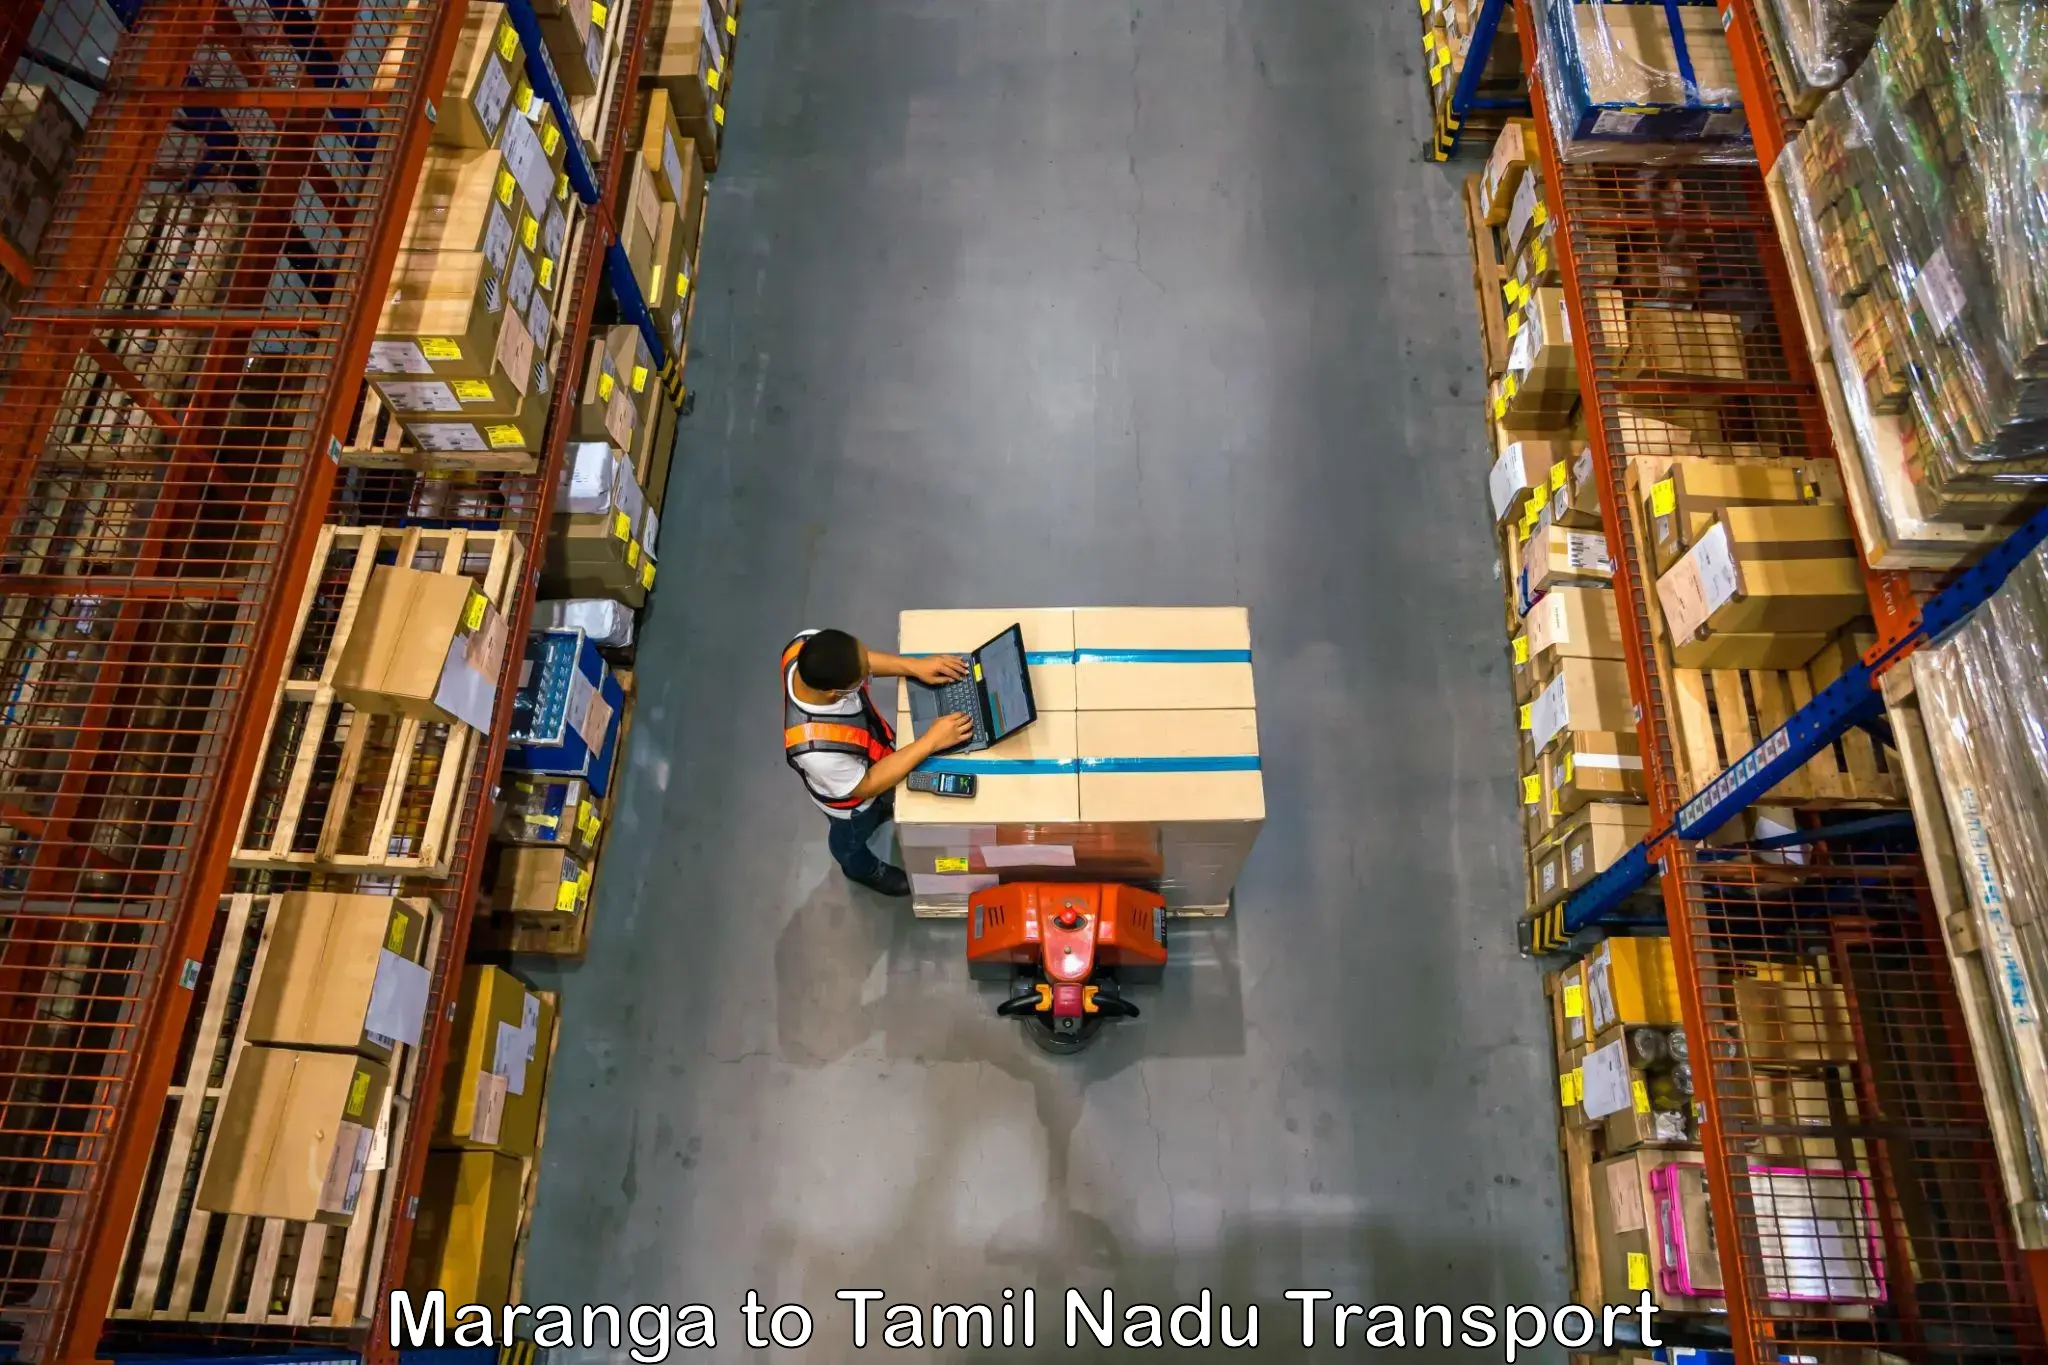 Transport bike from one state to another Maranga to Thiruvadanai